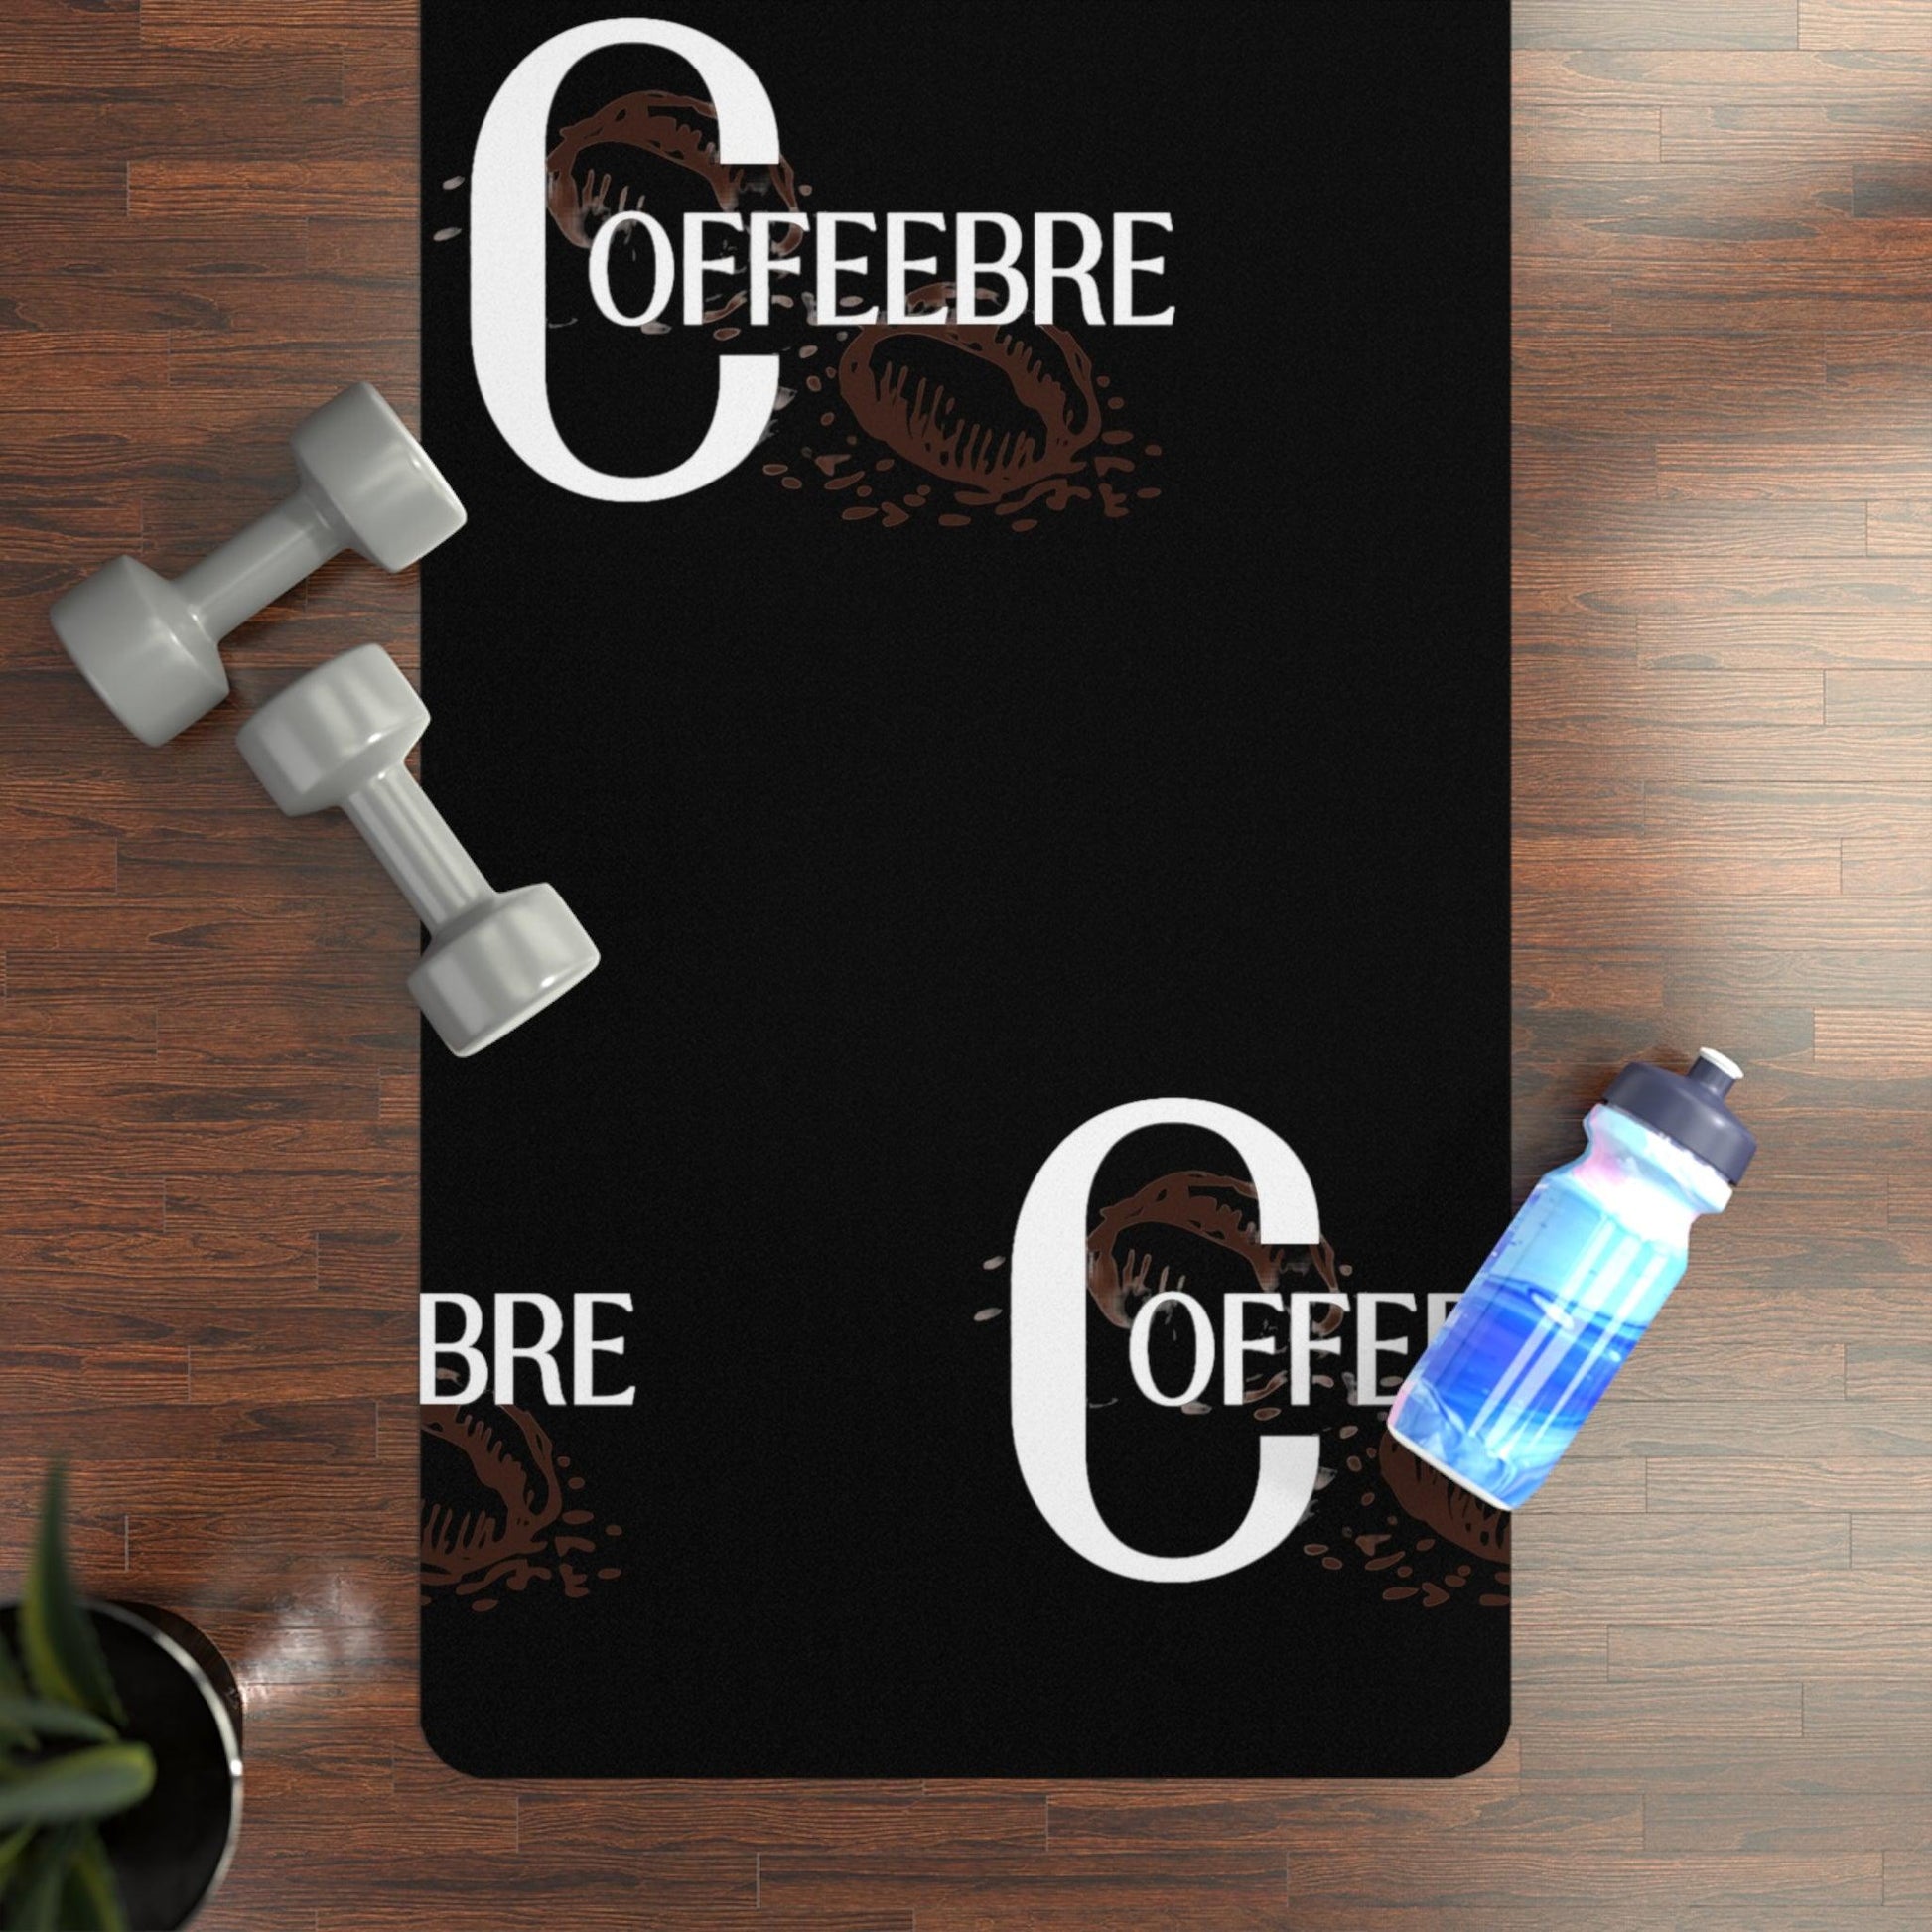 Coffeebre Luxury Rubber Yoga Mat - COFFEEBRE